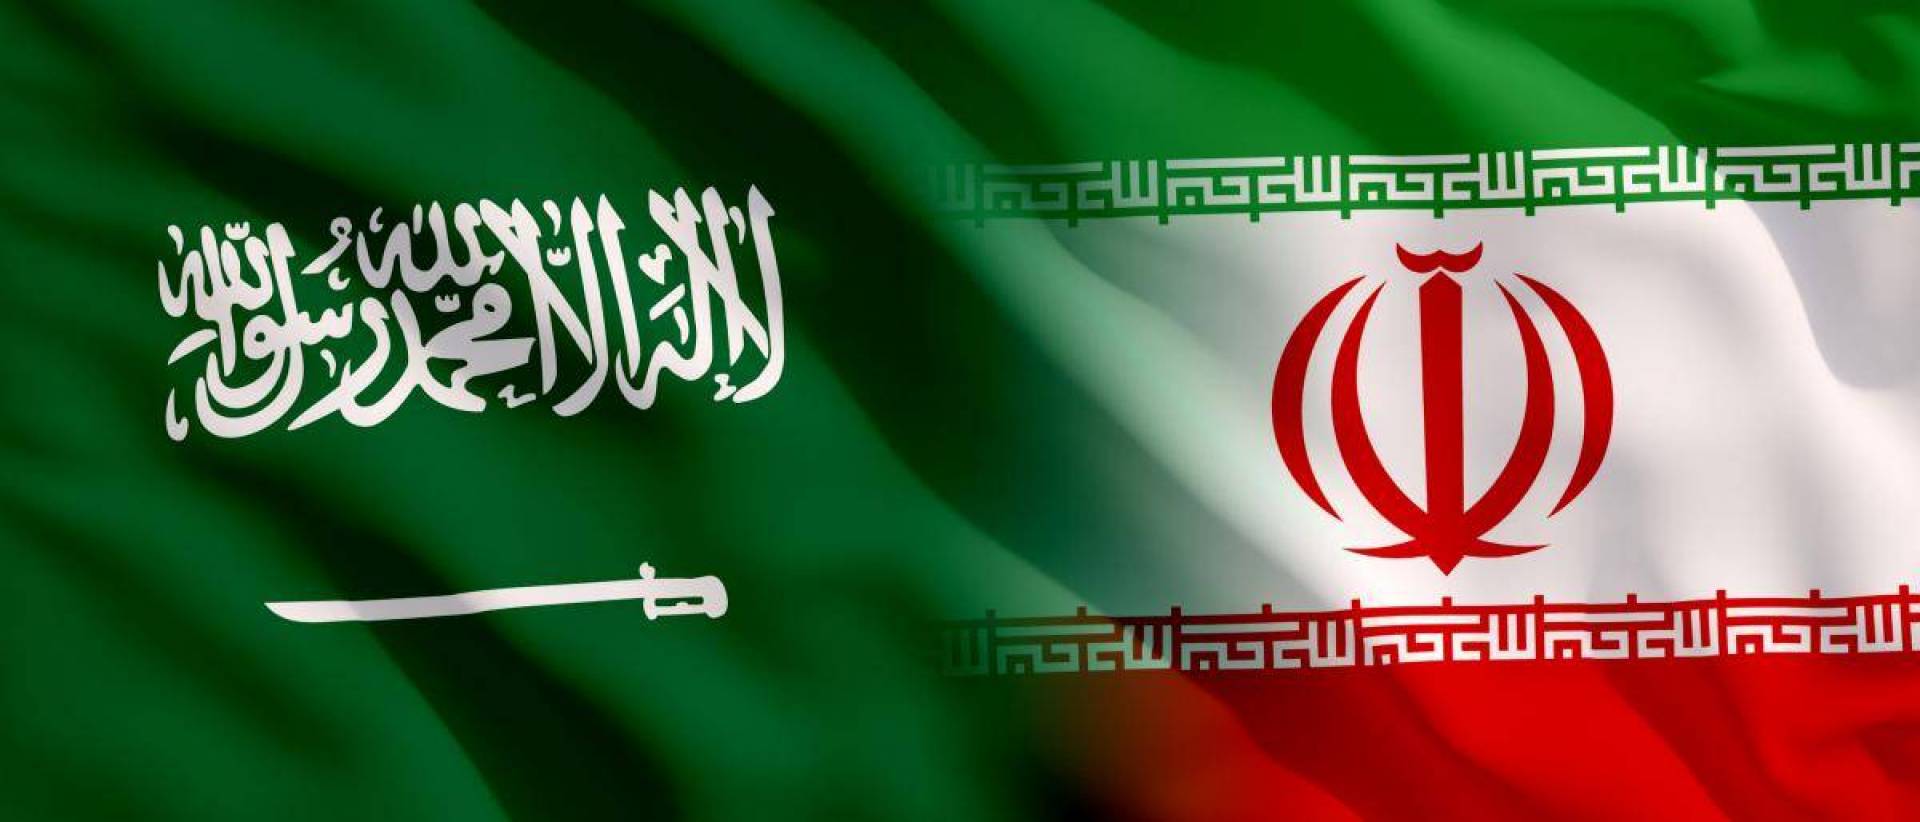   السعودية تدعو المجتمع الدولي لاتخاذ إجراءات رادعة إزاء تجاوزات إيران وخروقاتها للاتفاق النووي